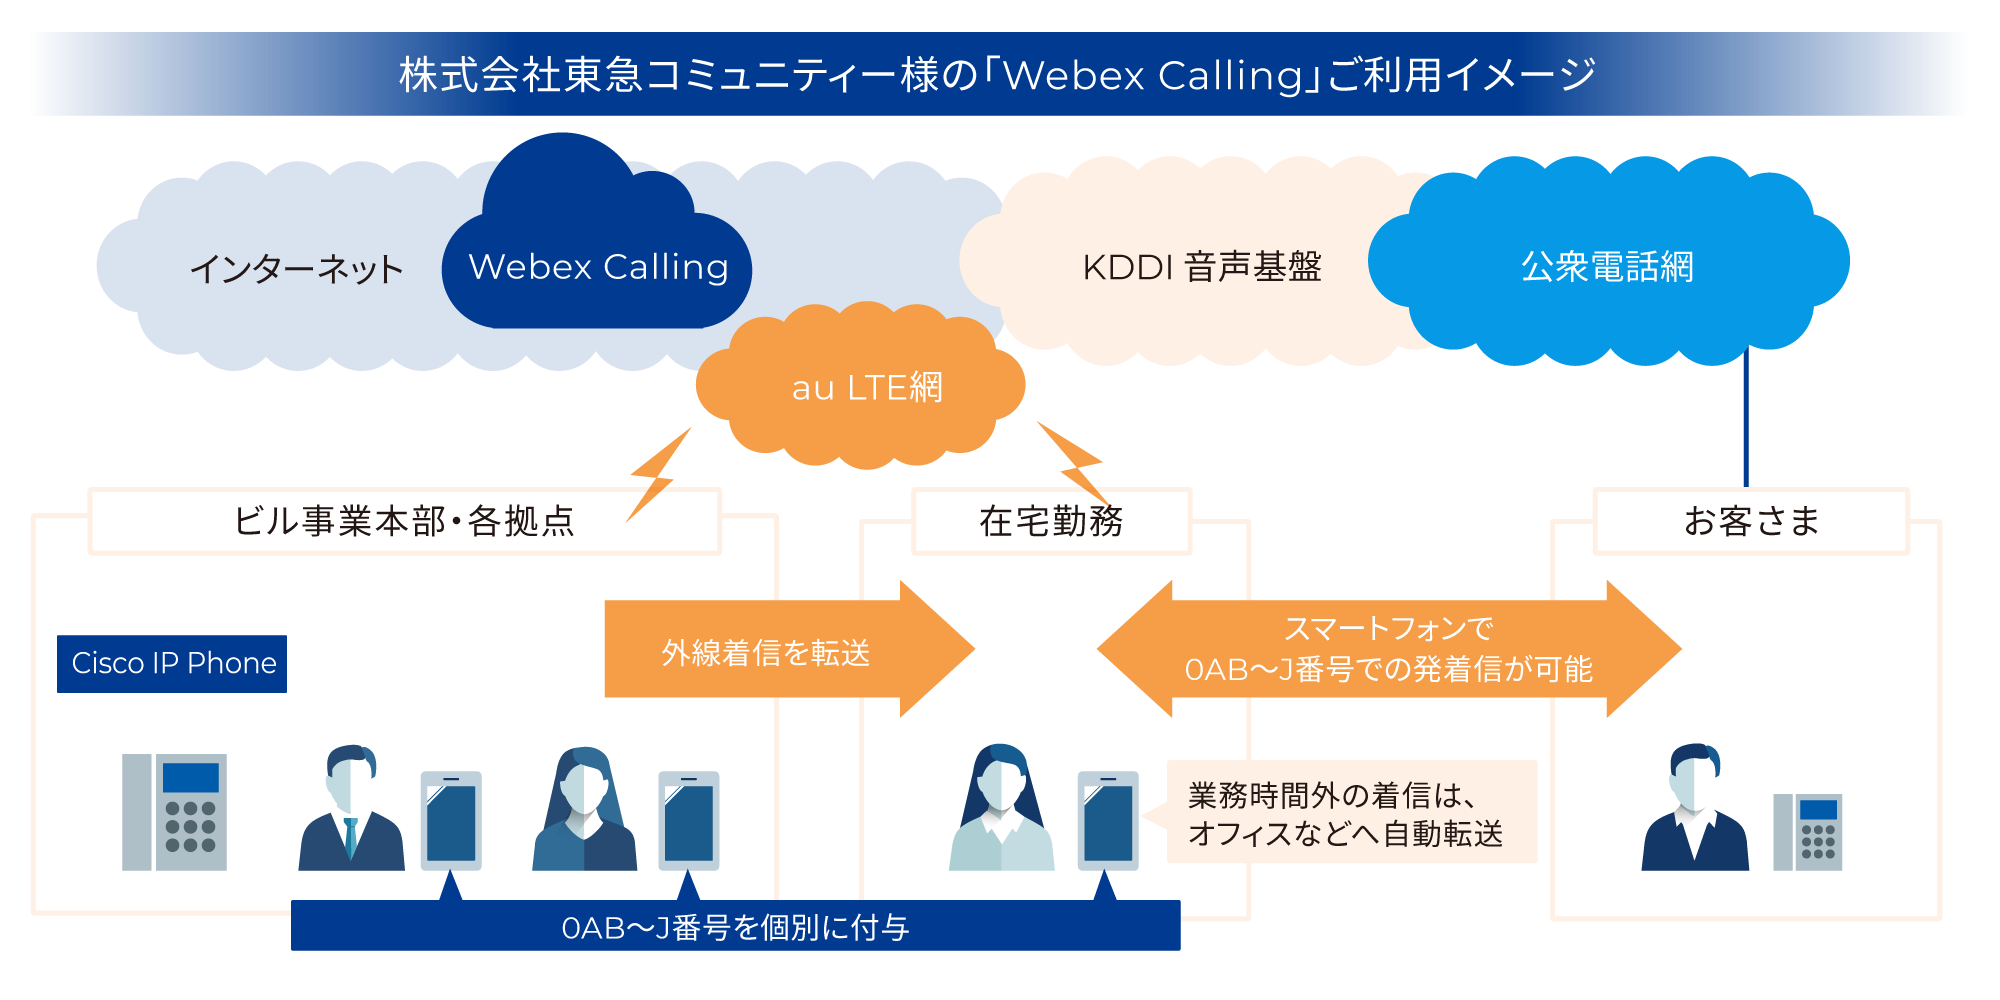 株式会社東急コミュニティー様の「Webex Calling」ご利用イメージ図 スマートフォンに0AB〜J番号を紐付けすることで、在宅勤務をしながらお客様との通話が可能に。業務時間外の着信は、オフィスなどへ自動転送が可能。